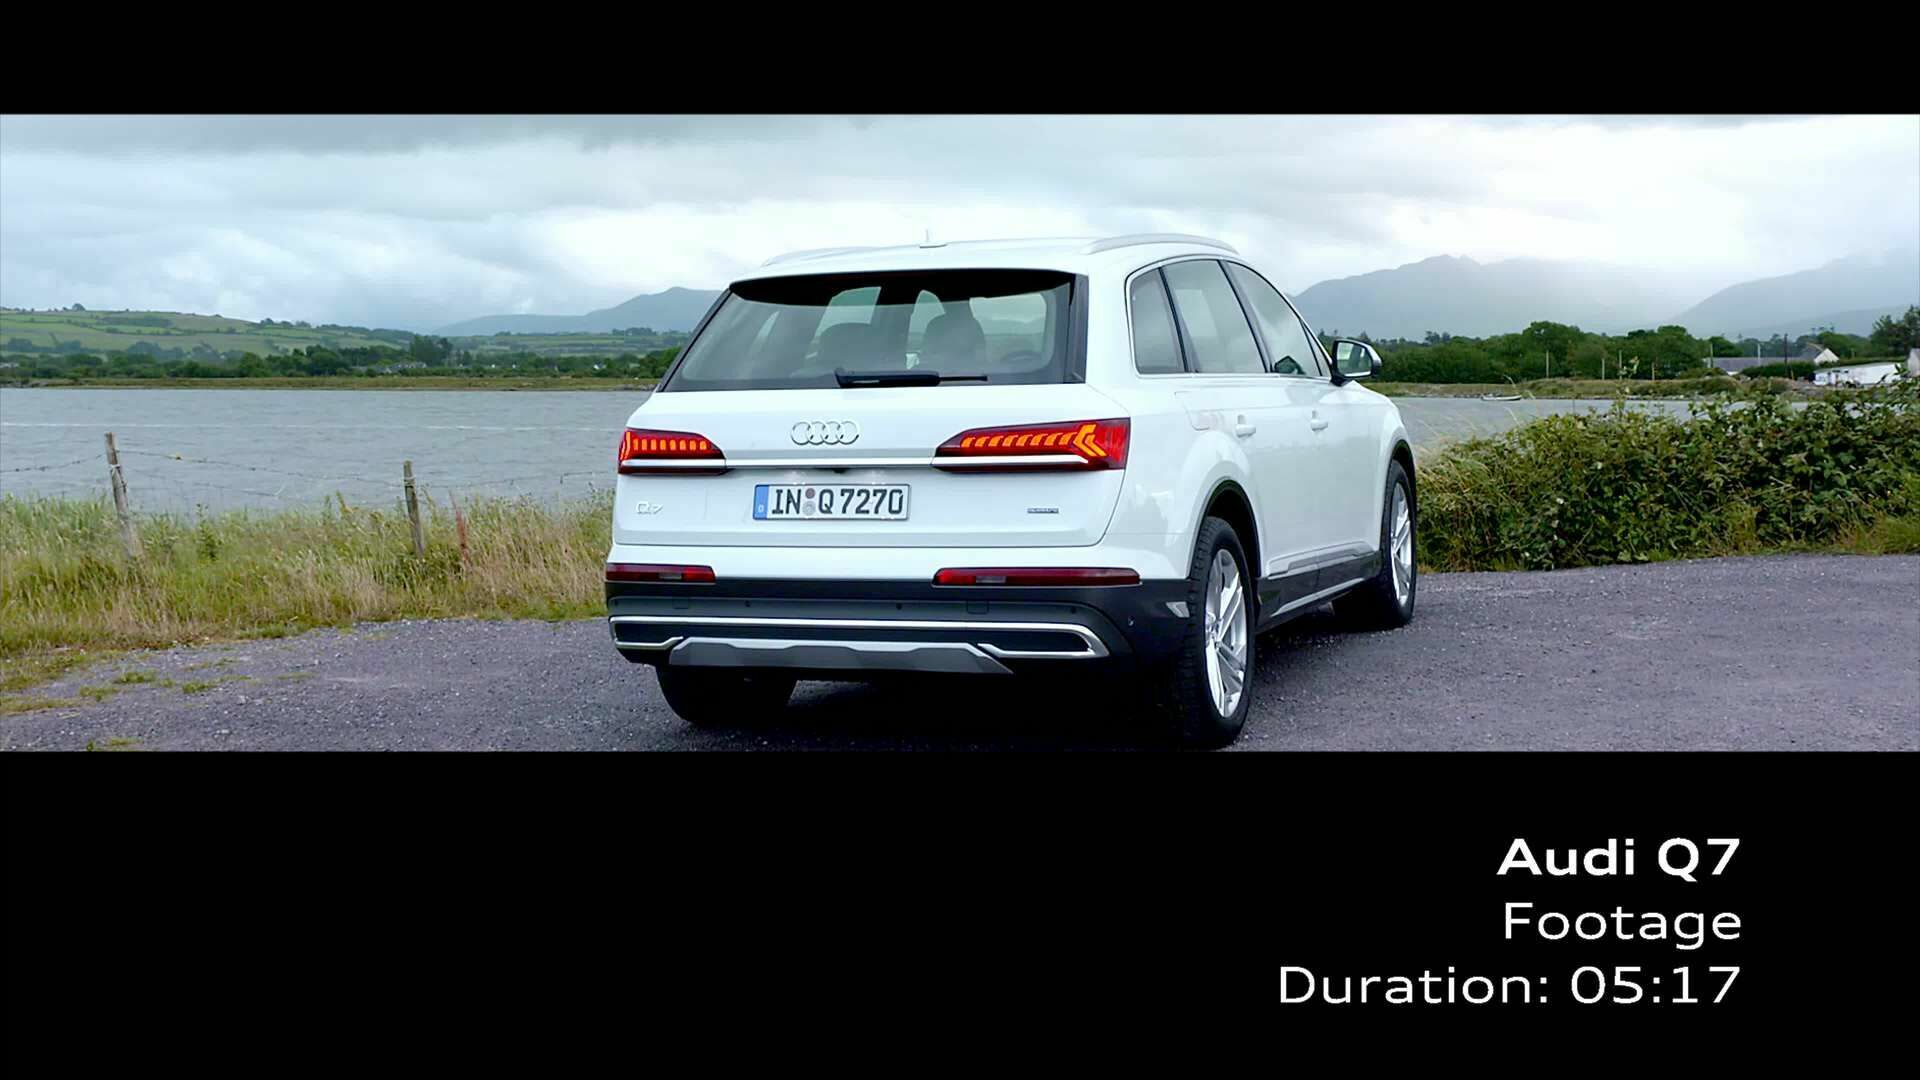 Audi Q7 Gletscherweiß (Footage)